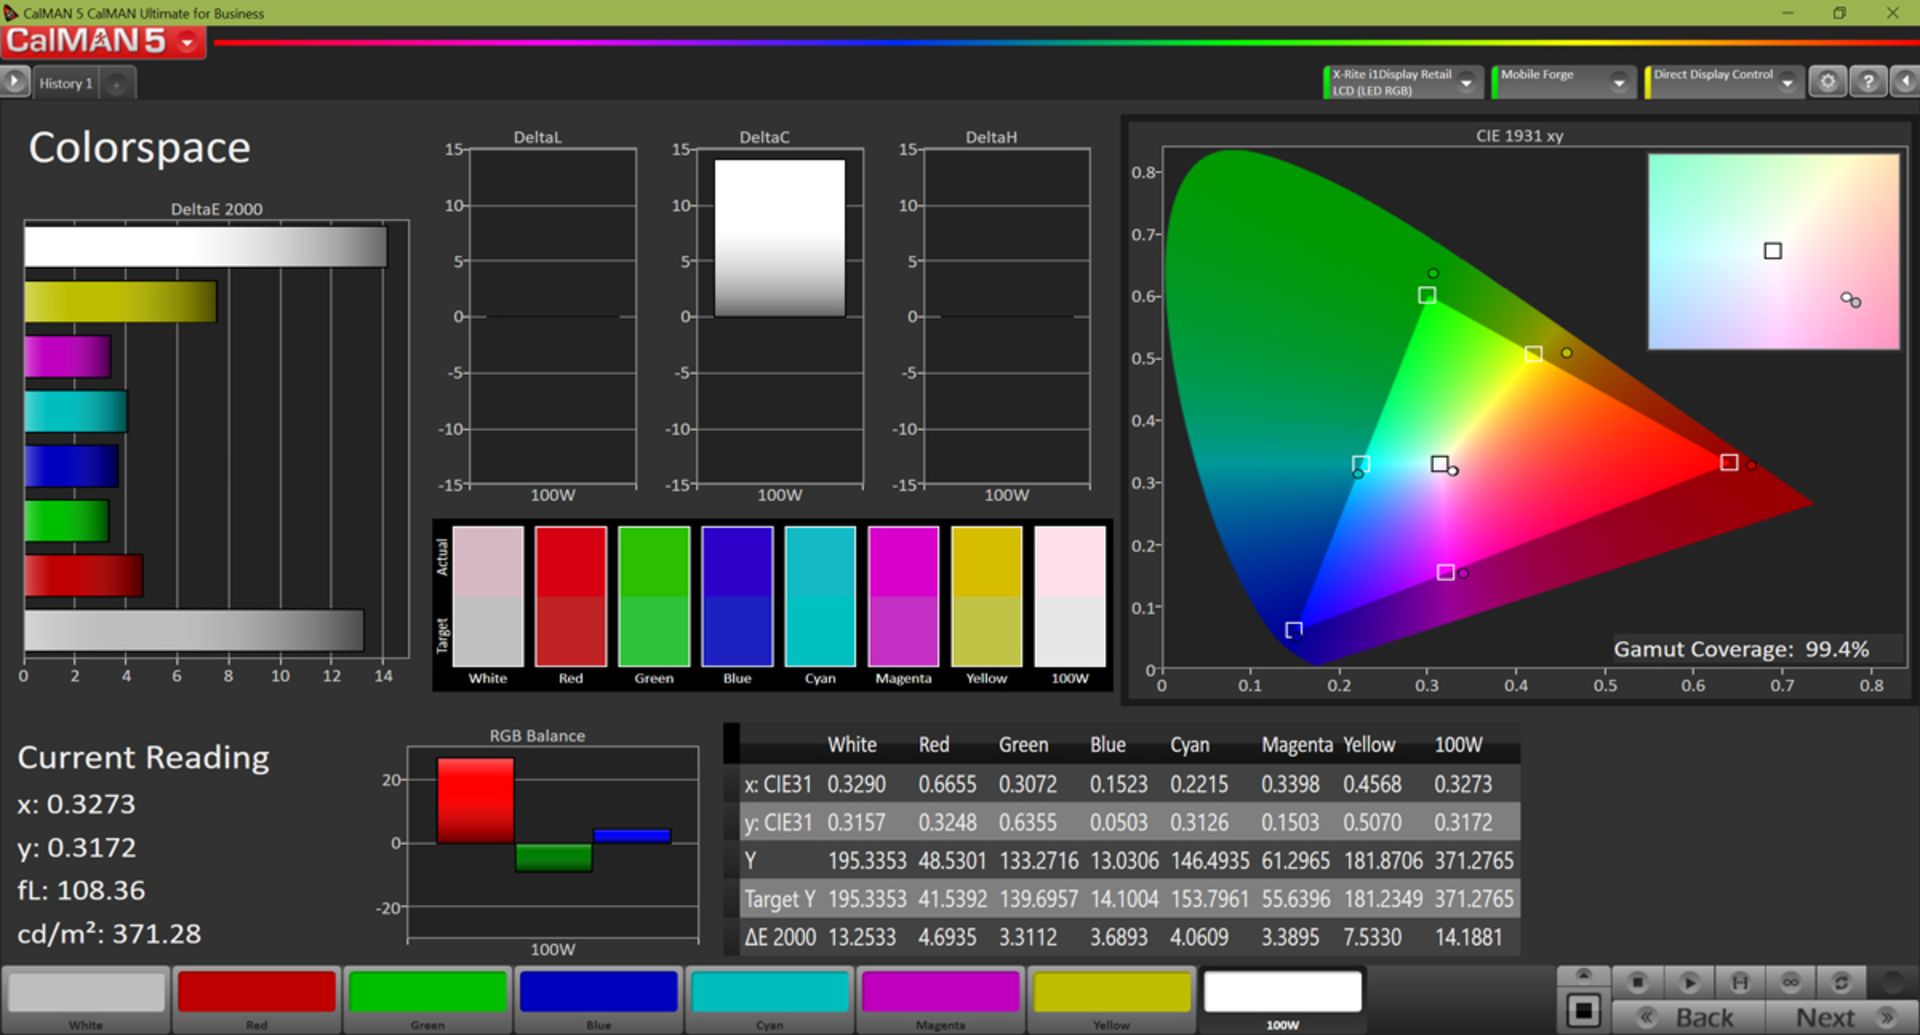 مرجع متخصصين ايران پوشش فضاي رنگي sRGB در حالت Standard براي ردمي ۷